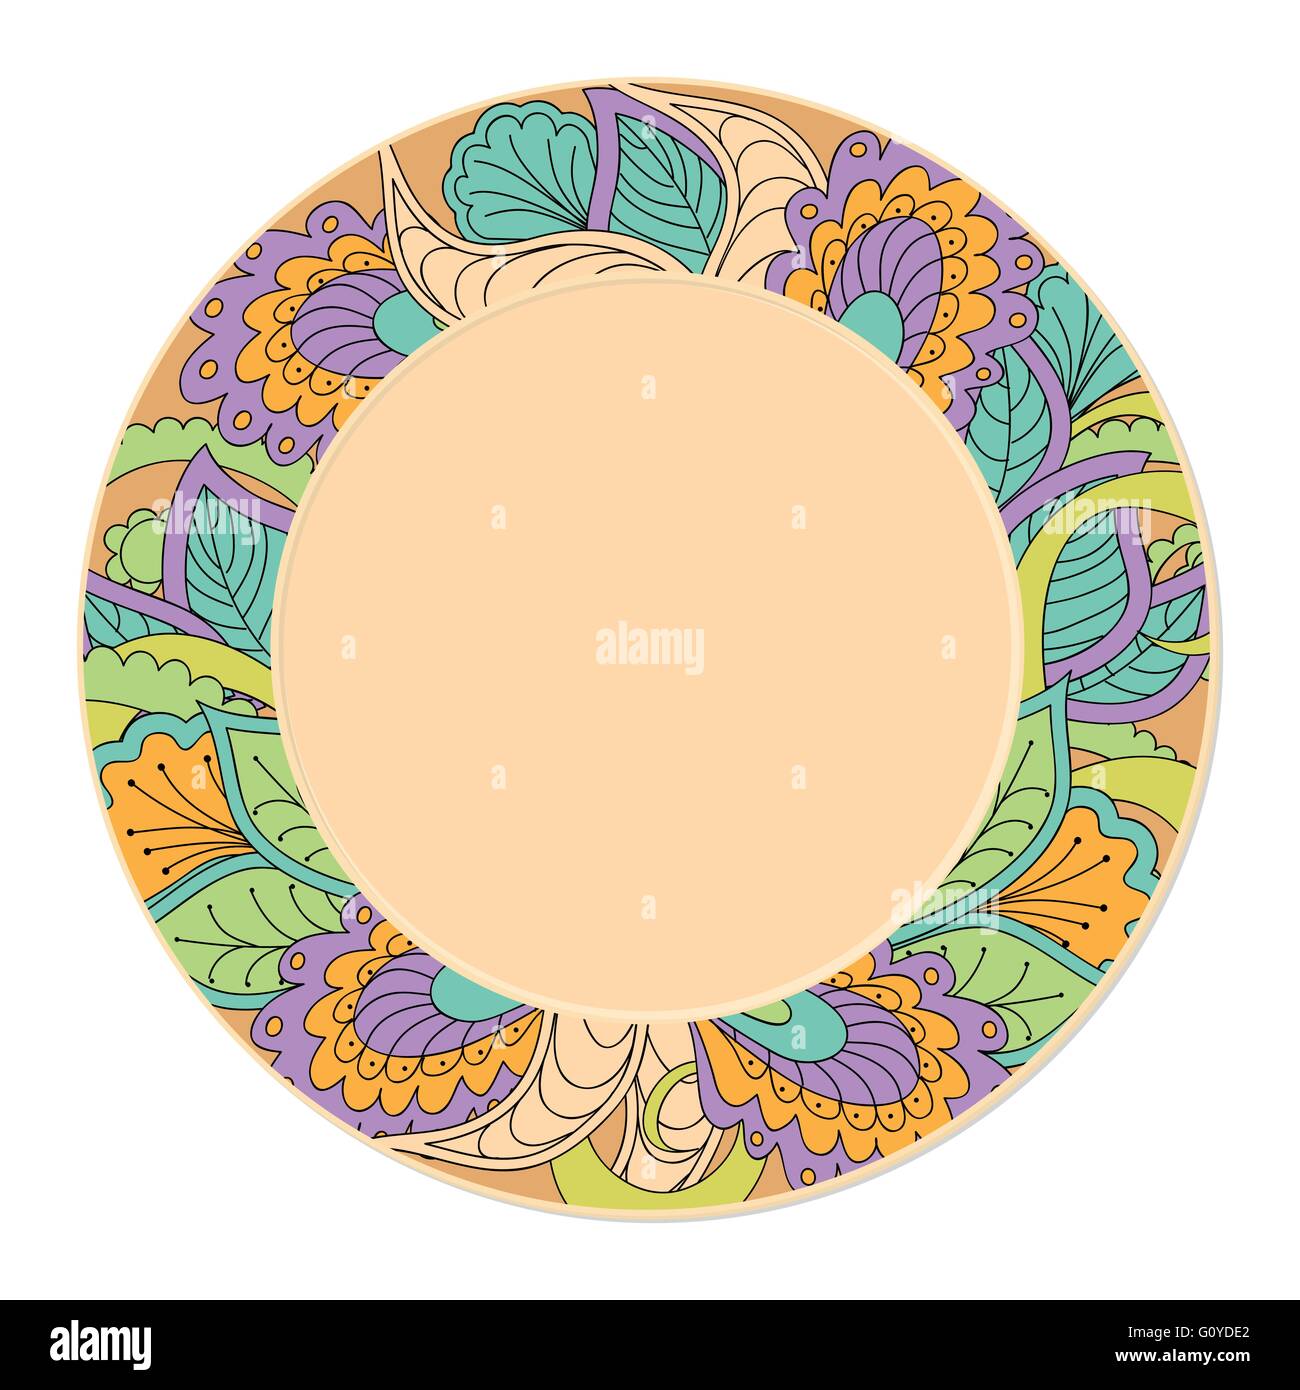 Disegnato a mano piattino decorato in stile Boho con doodle piante. isolato su bianco. template per la decorazione dei piatti, piastre. Illustrazione Vettoriale